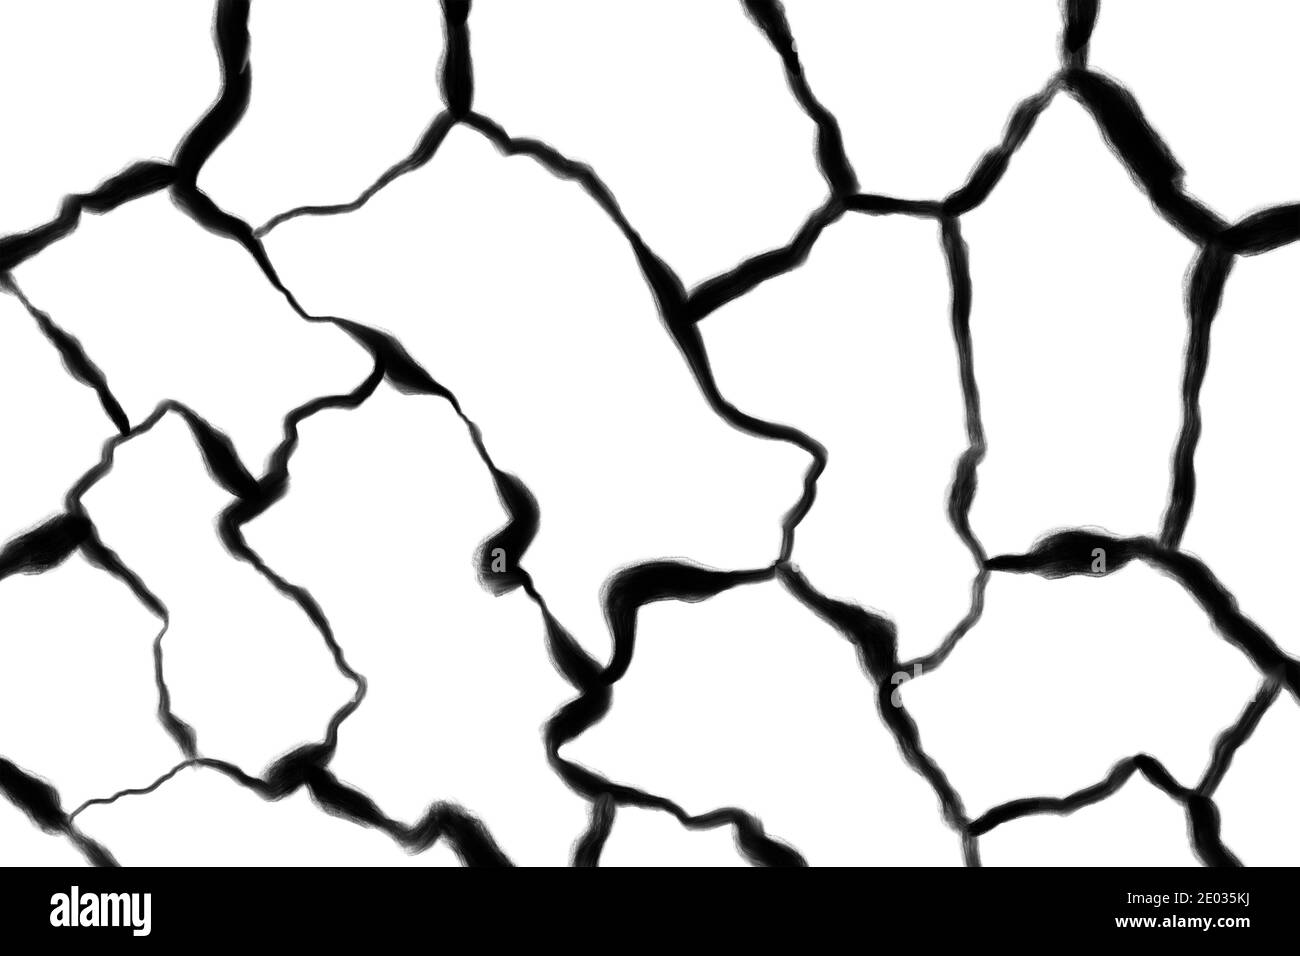 Wackelige schwarze Linien auf dem weißen Hintergrund. Netz, Netz und abstrakte Struktur. Schlampiges Grafikdesign Stockfoto